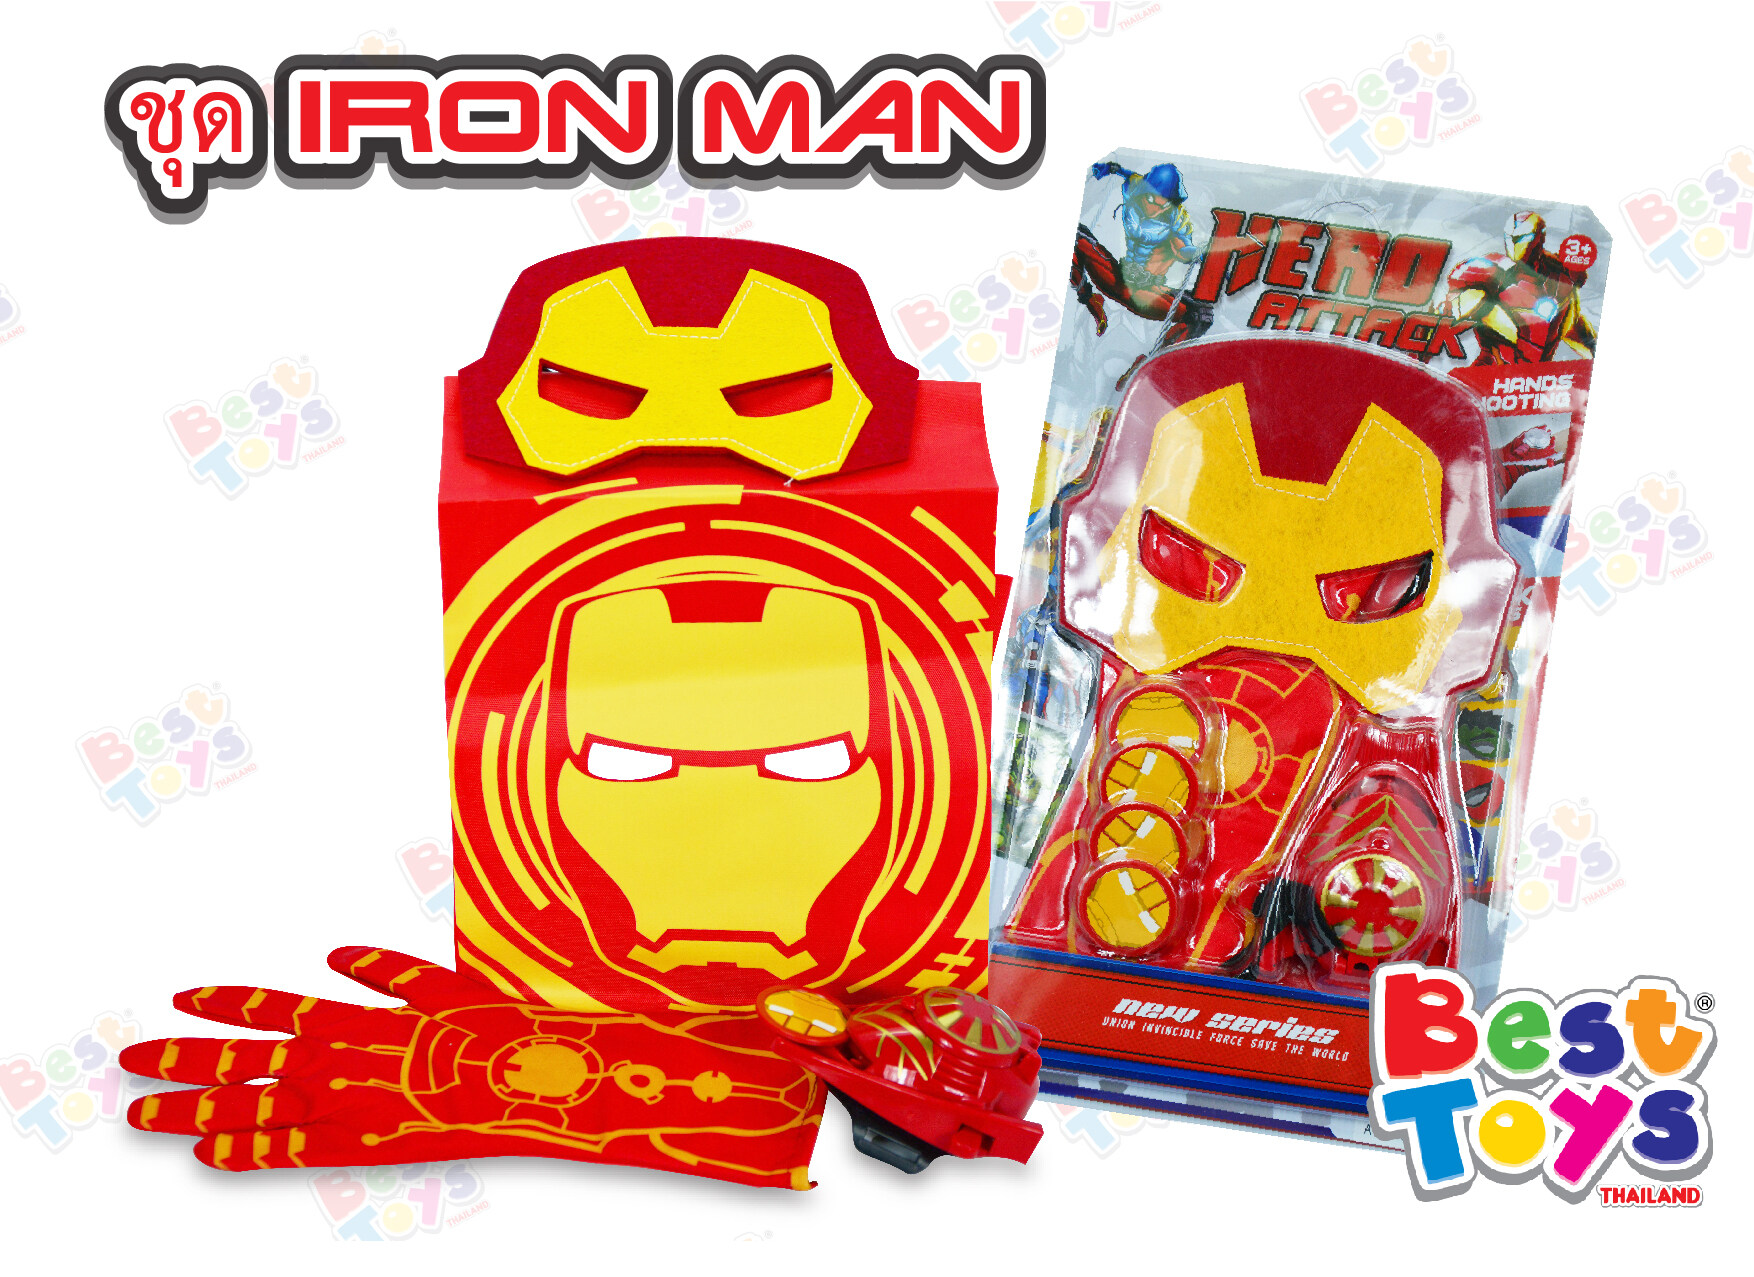 👉🏻ชุดเซ็ตอุปกรร์ไอรอนแมน Iron Man พร้อมอุปกรณ์ ชุดแต่ง หน้ากาก ถุงมือ ผ้าคลุม เครื่องยิงกระสุน ครบเซ็ต สนุกสนาน เพลิดเพลิน/Best Toys เบสทอย